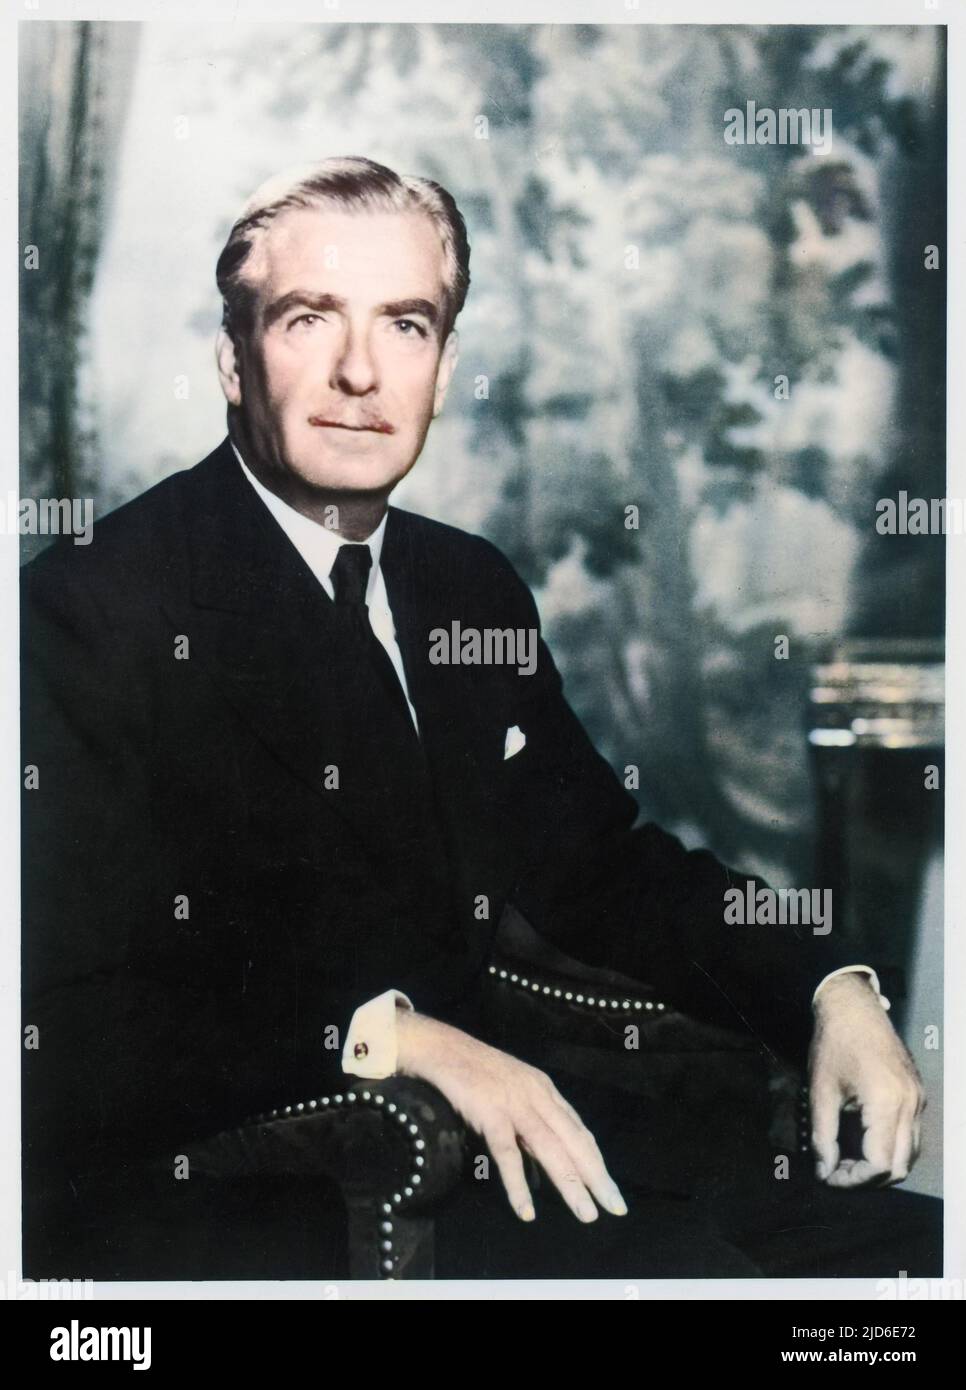 Premier ministre conservateur britannique, sir Anthony Eden (1897-1977). Version colorisée de : 10086146 Date: Vers 1954 Banque D'Images